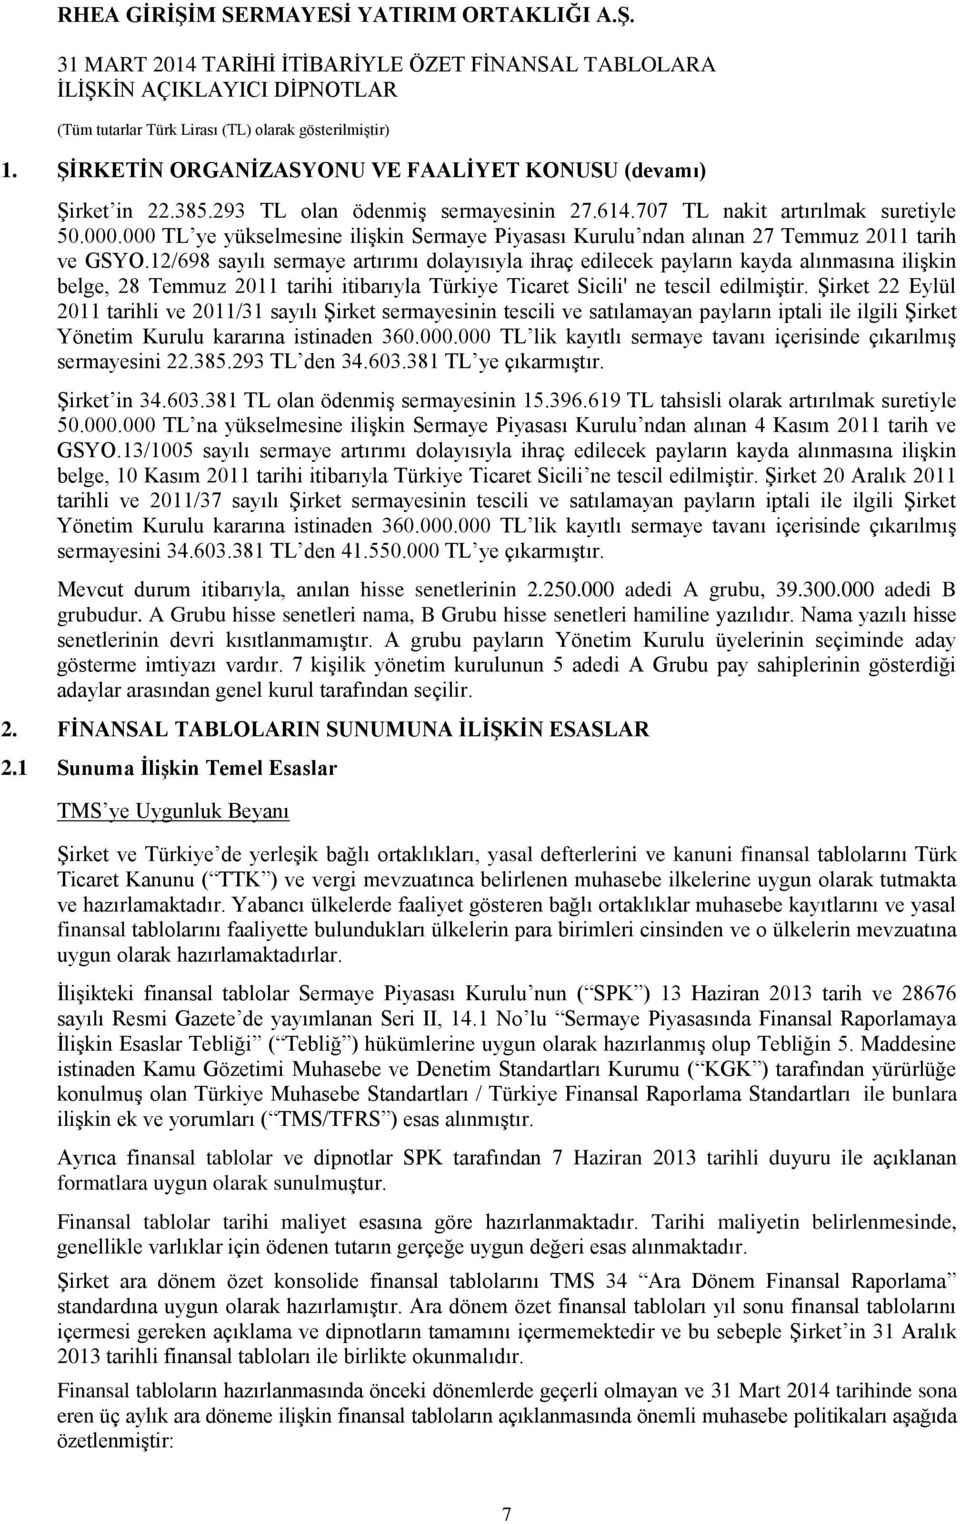 12/698 sayılı sermaye artırımı dolayısıyla ihraç edilecek payların kayda alınmasına ilişkin belge, 28 Temmuz 2011 tarihi itibarıyla Türkiye Ticaret Sicili' ne tescil edilmiştir.